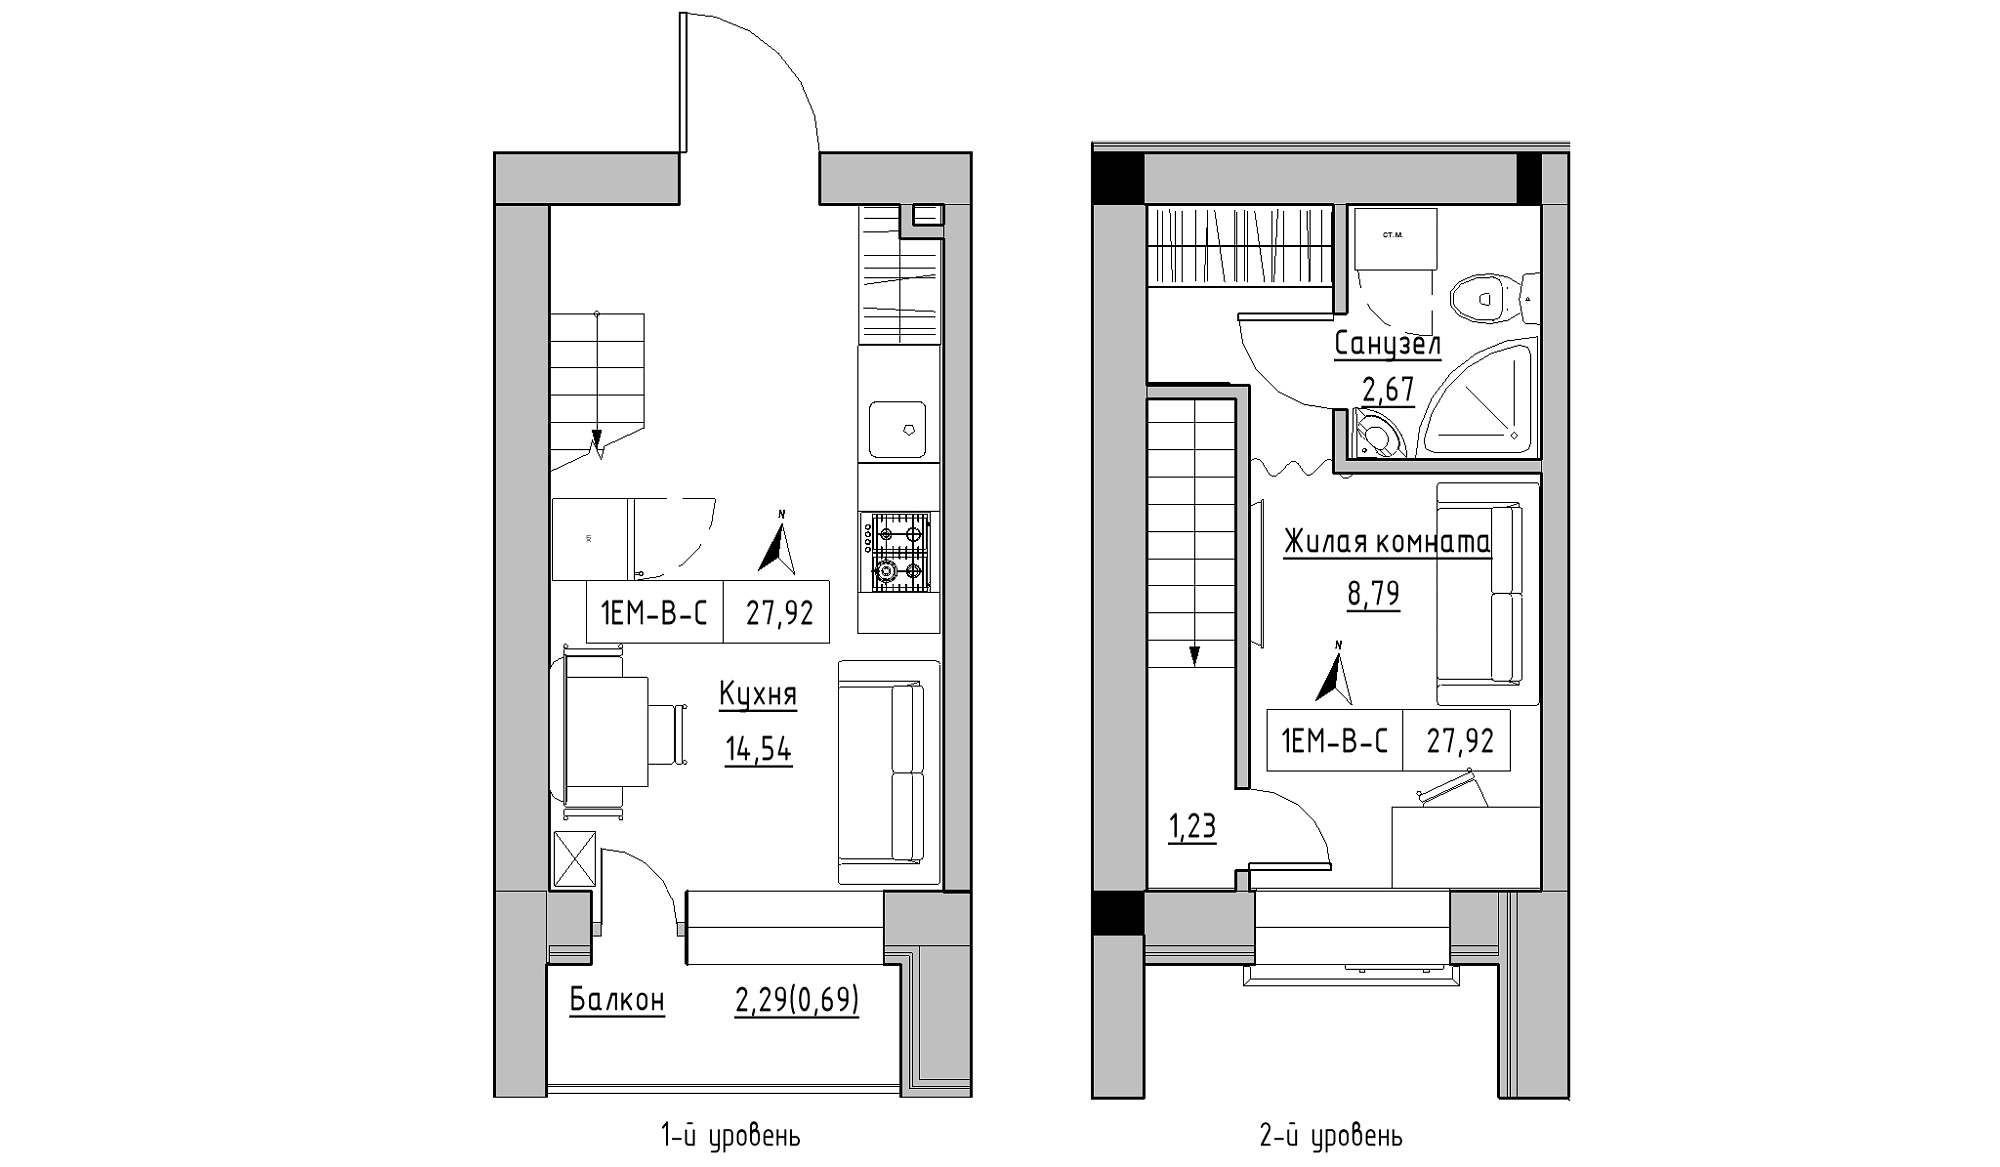 Planning 2-lvl flats area 27.92m2, KS-016-05/0010.